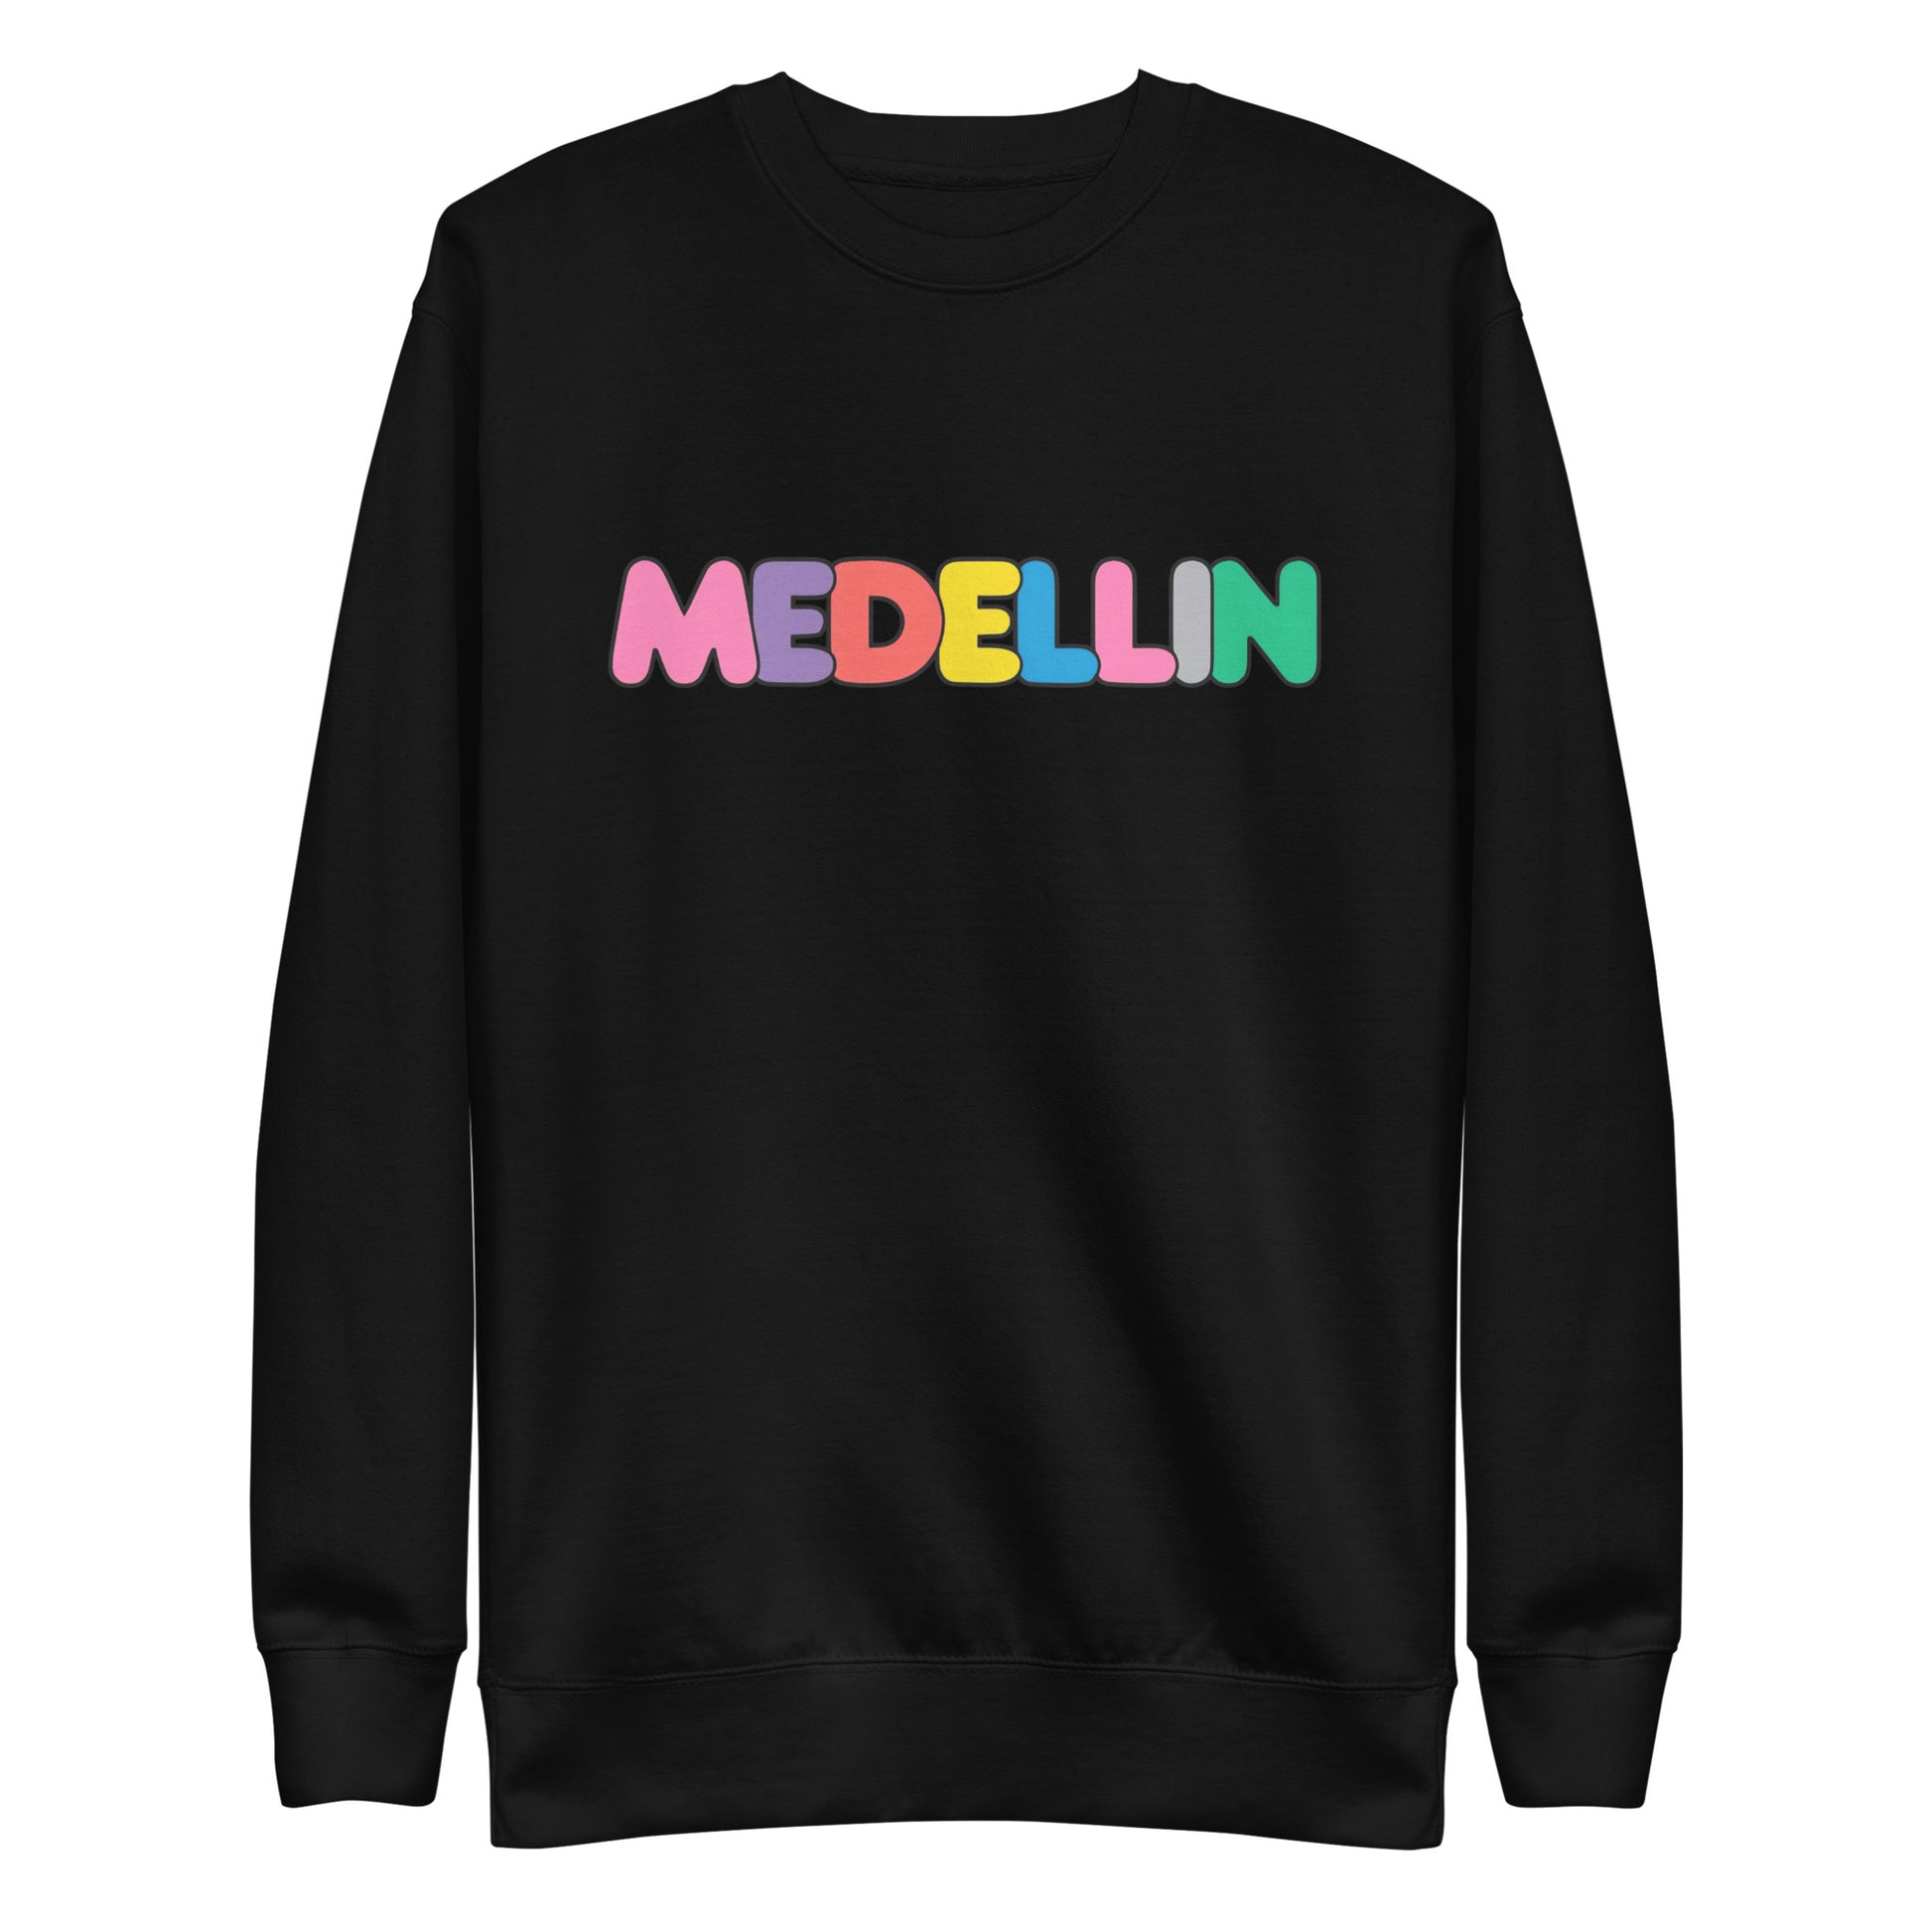 Suéter de Color Medellin ,Descubre calidad excepcional y estampados duraderos. Encuentra estilo y orgullo en cada prenda. Compra ahora!